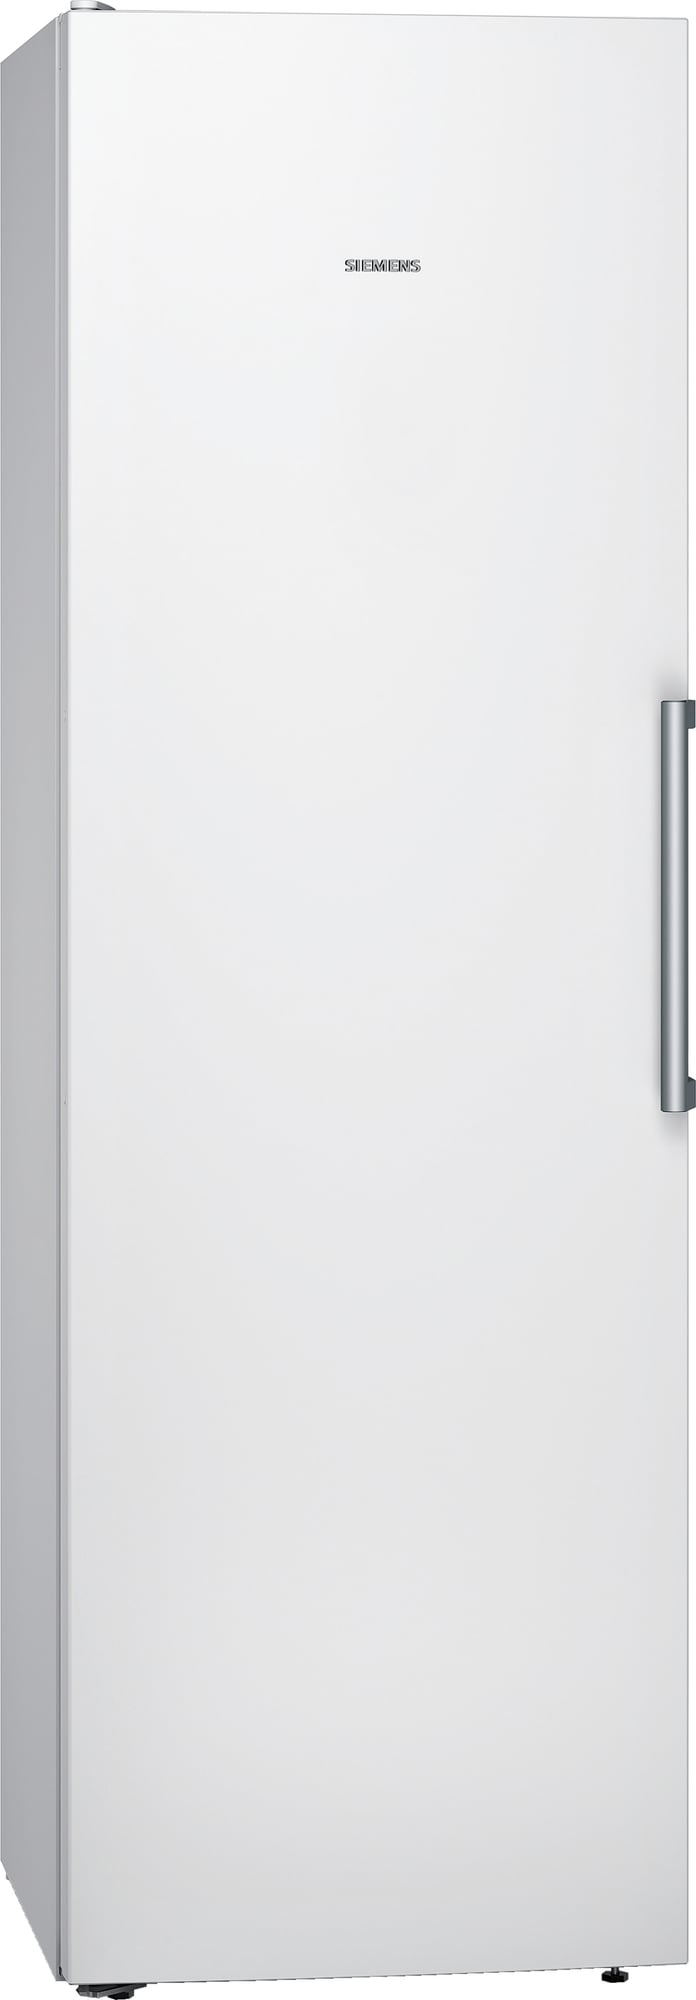 Siemens Køleskab KS36VFWEP (hvid)